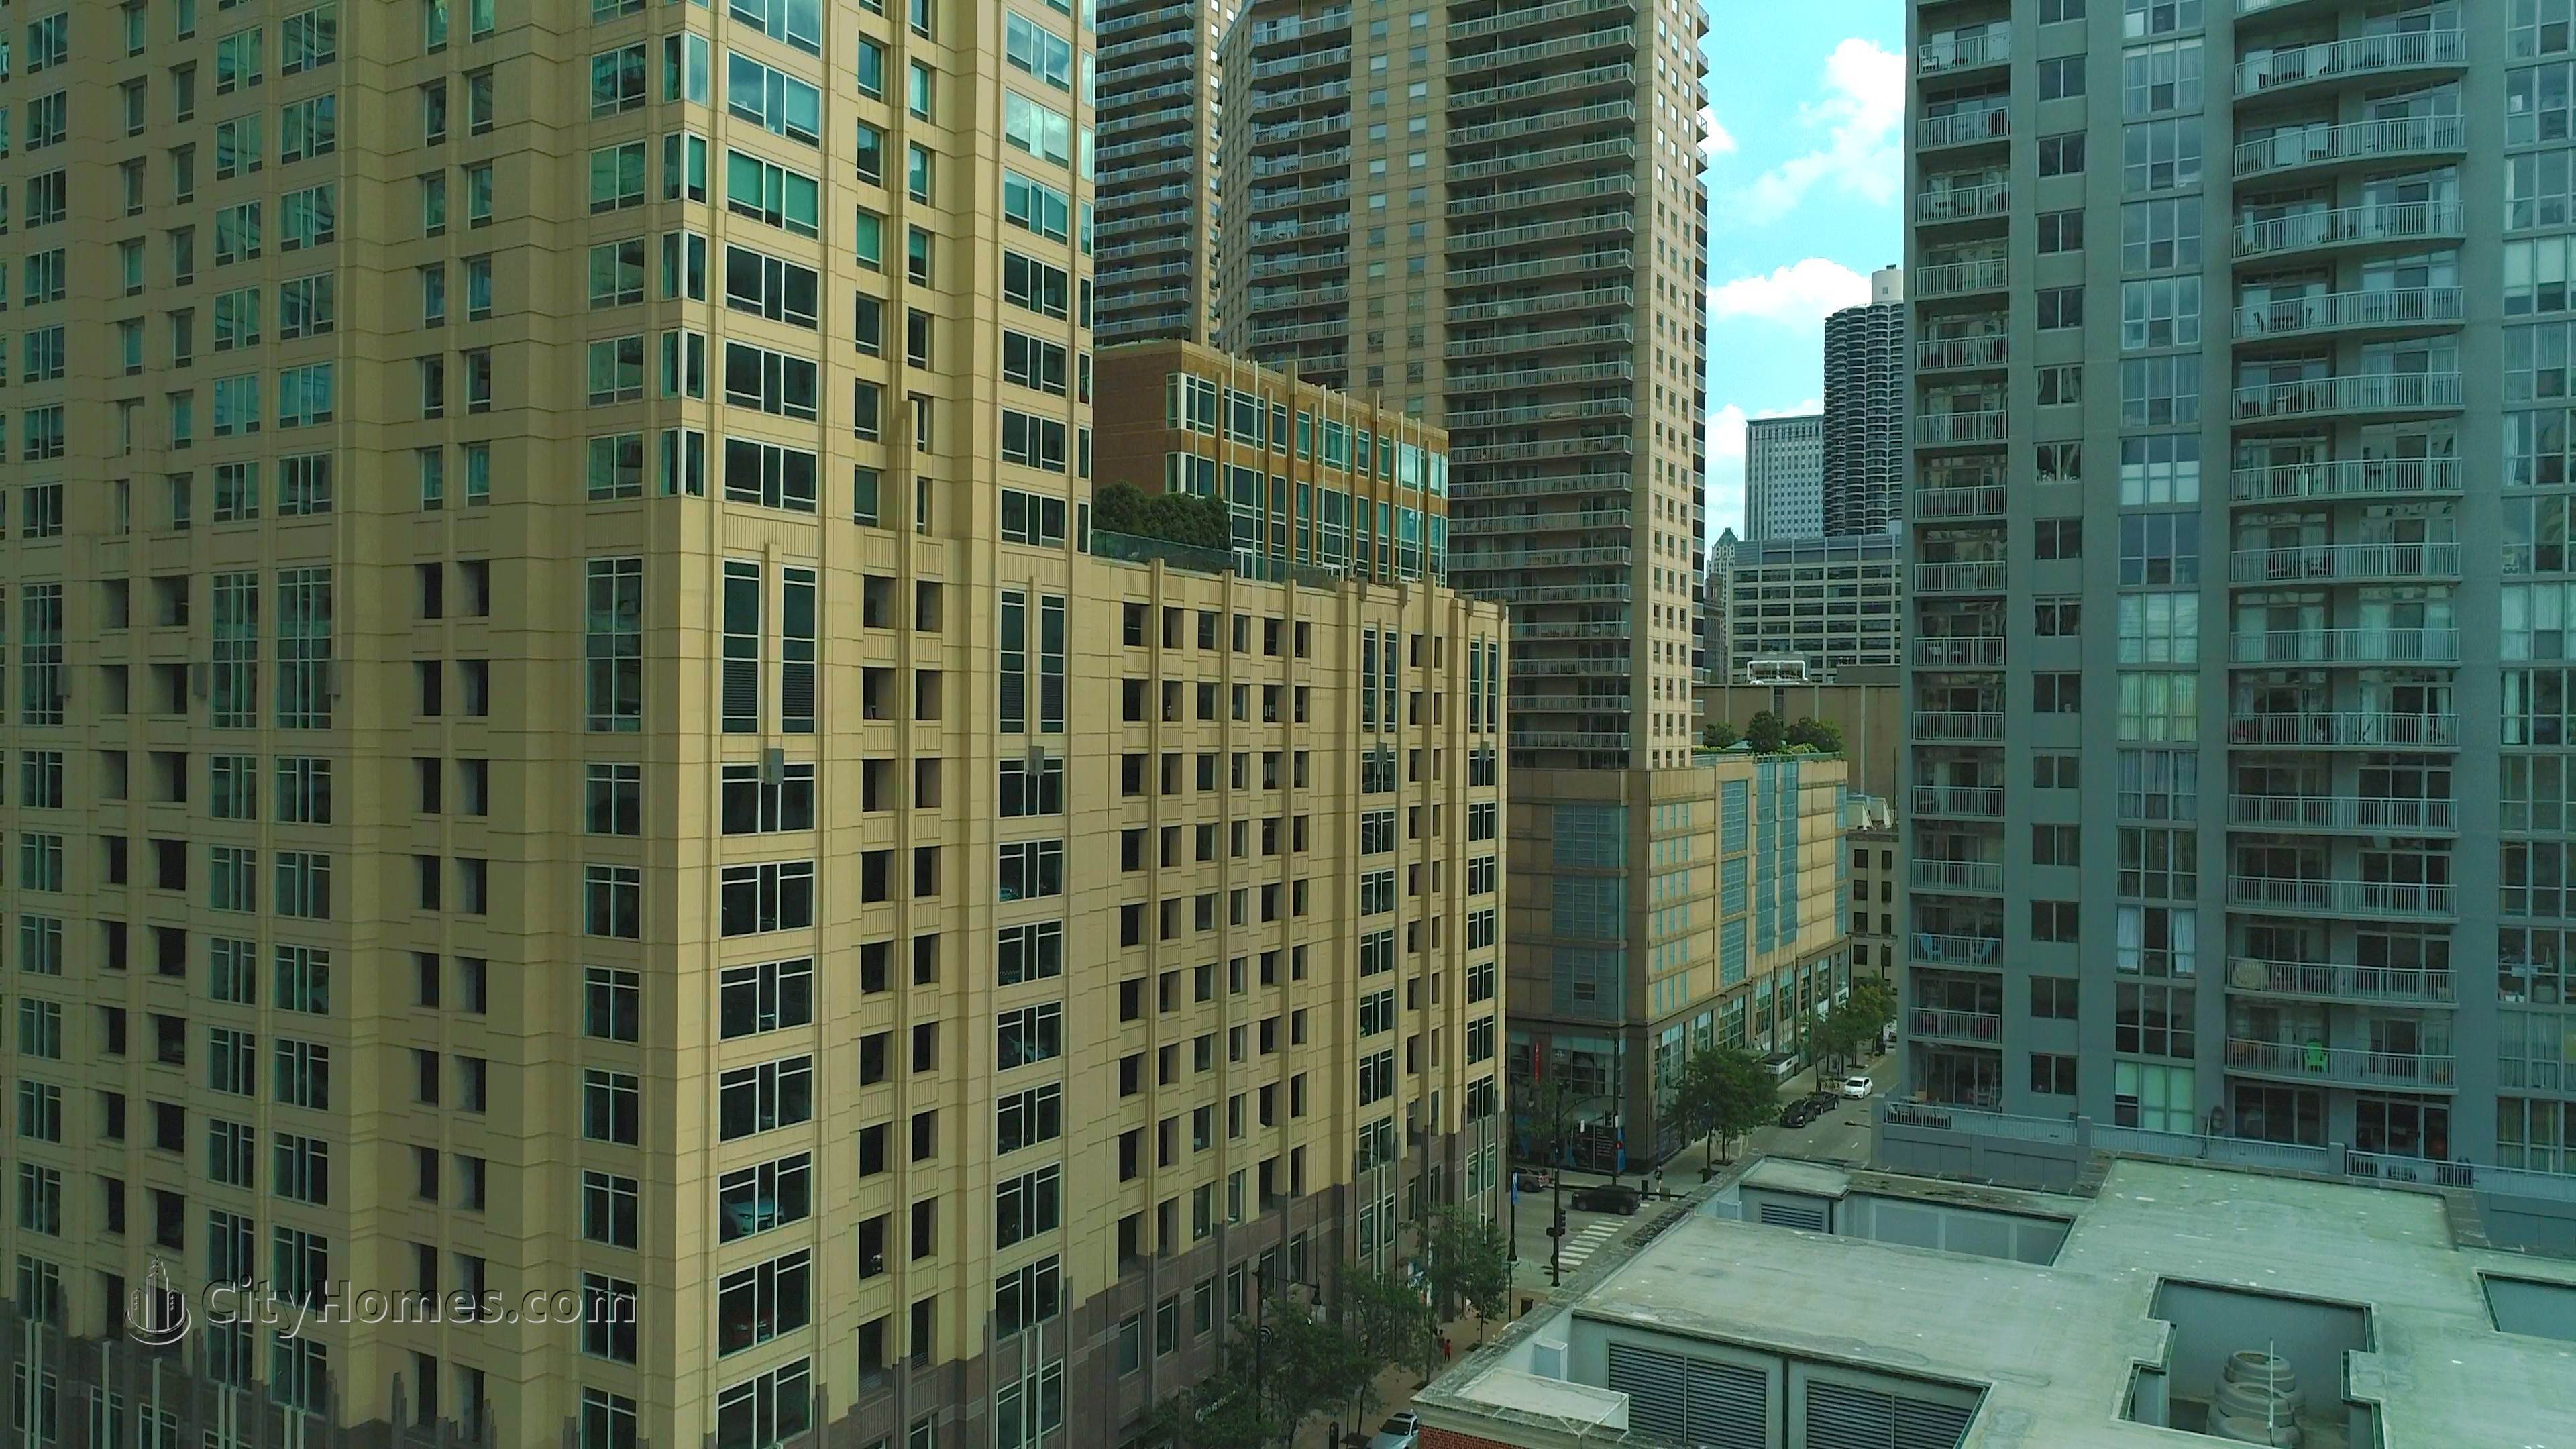 Millennium Centre Gebäude bei 33 W Ontario St, Central Chicago, Chicago, IL 60610